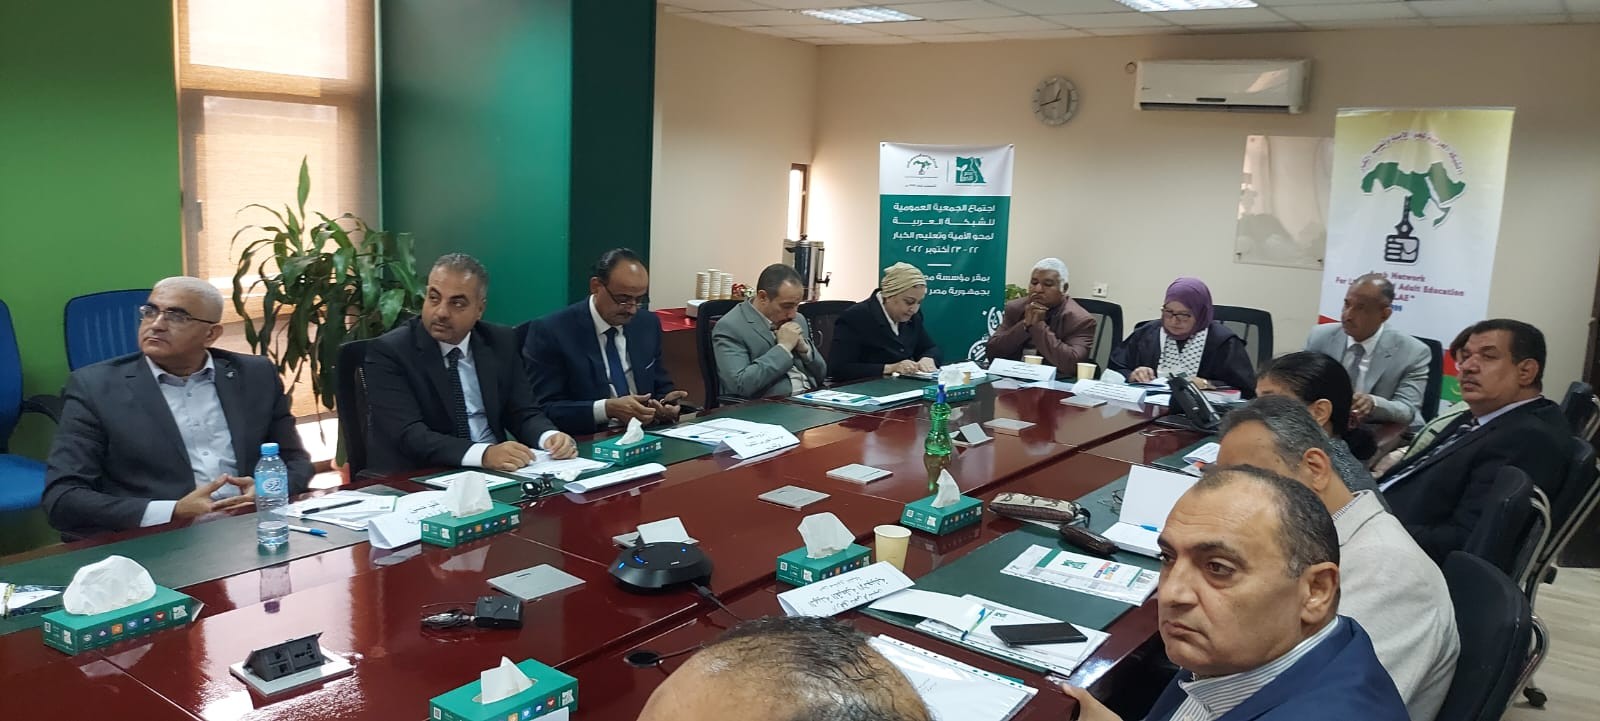 اجتماع الجمعية العمومية للشبكة العربية لمحو الأمية وتعليم الكبار في القاهرة 6.jpg